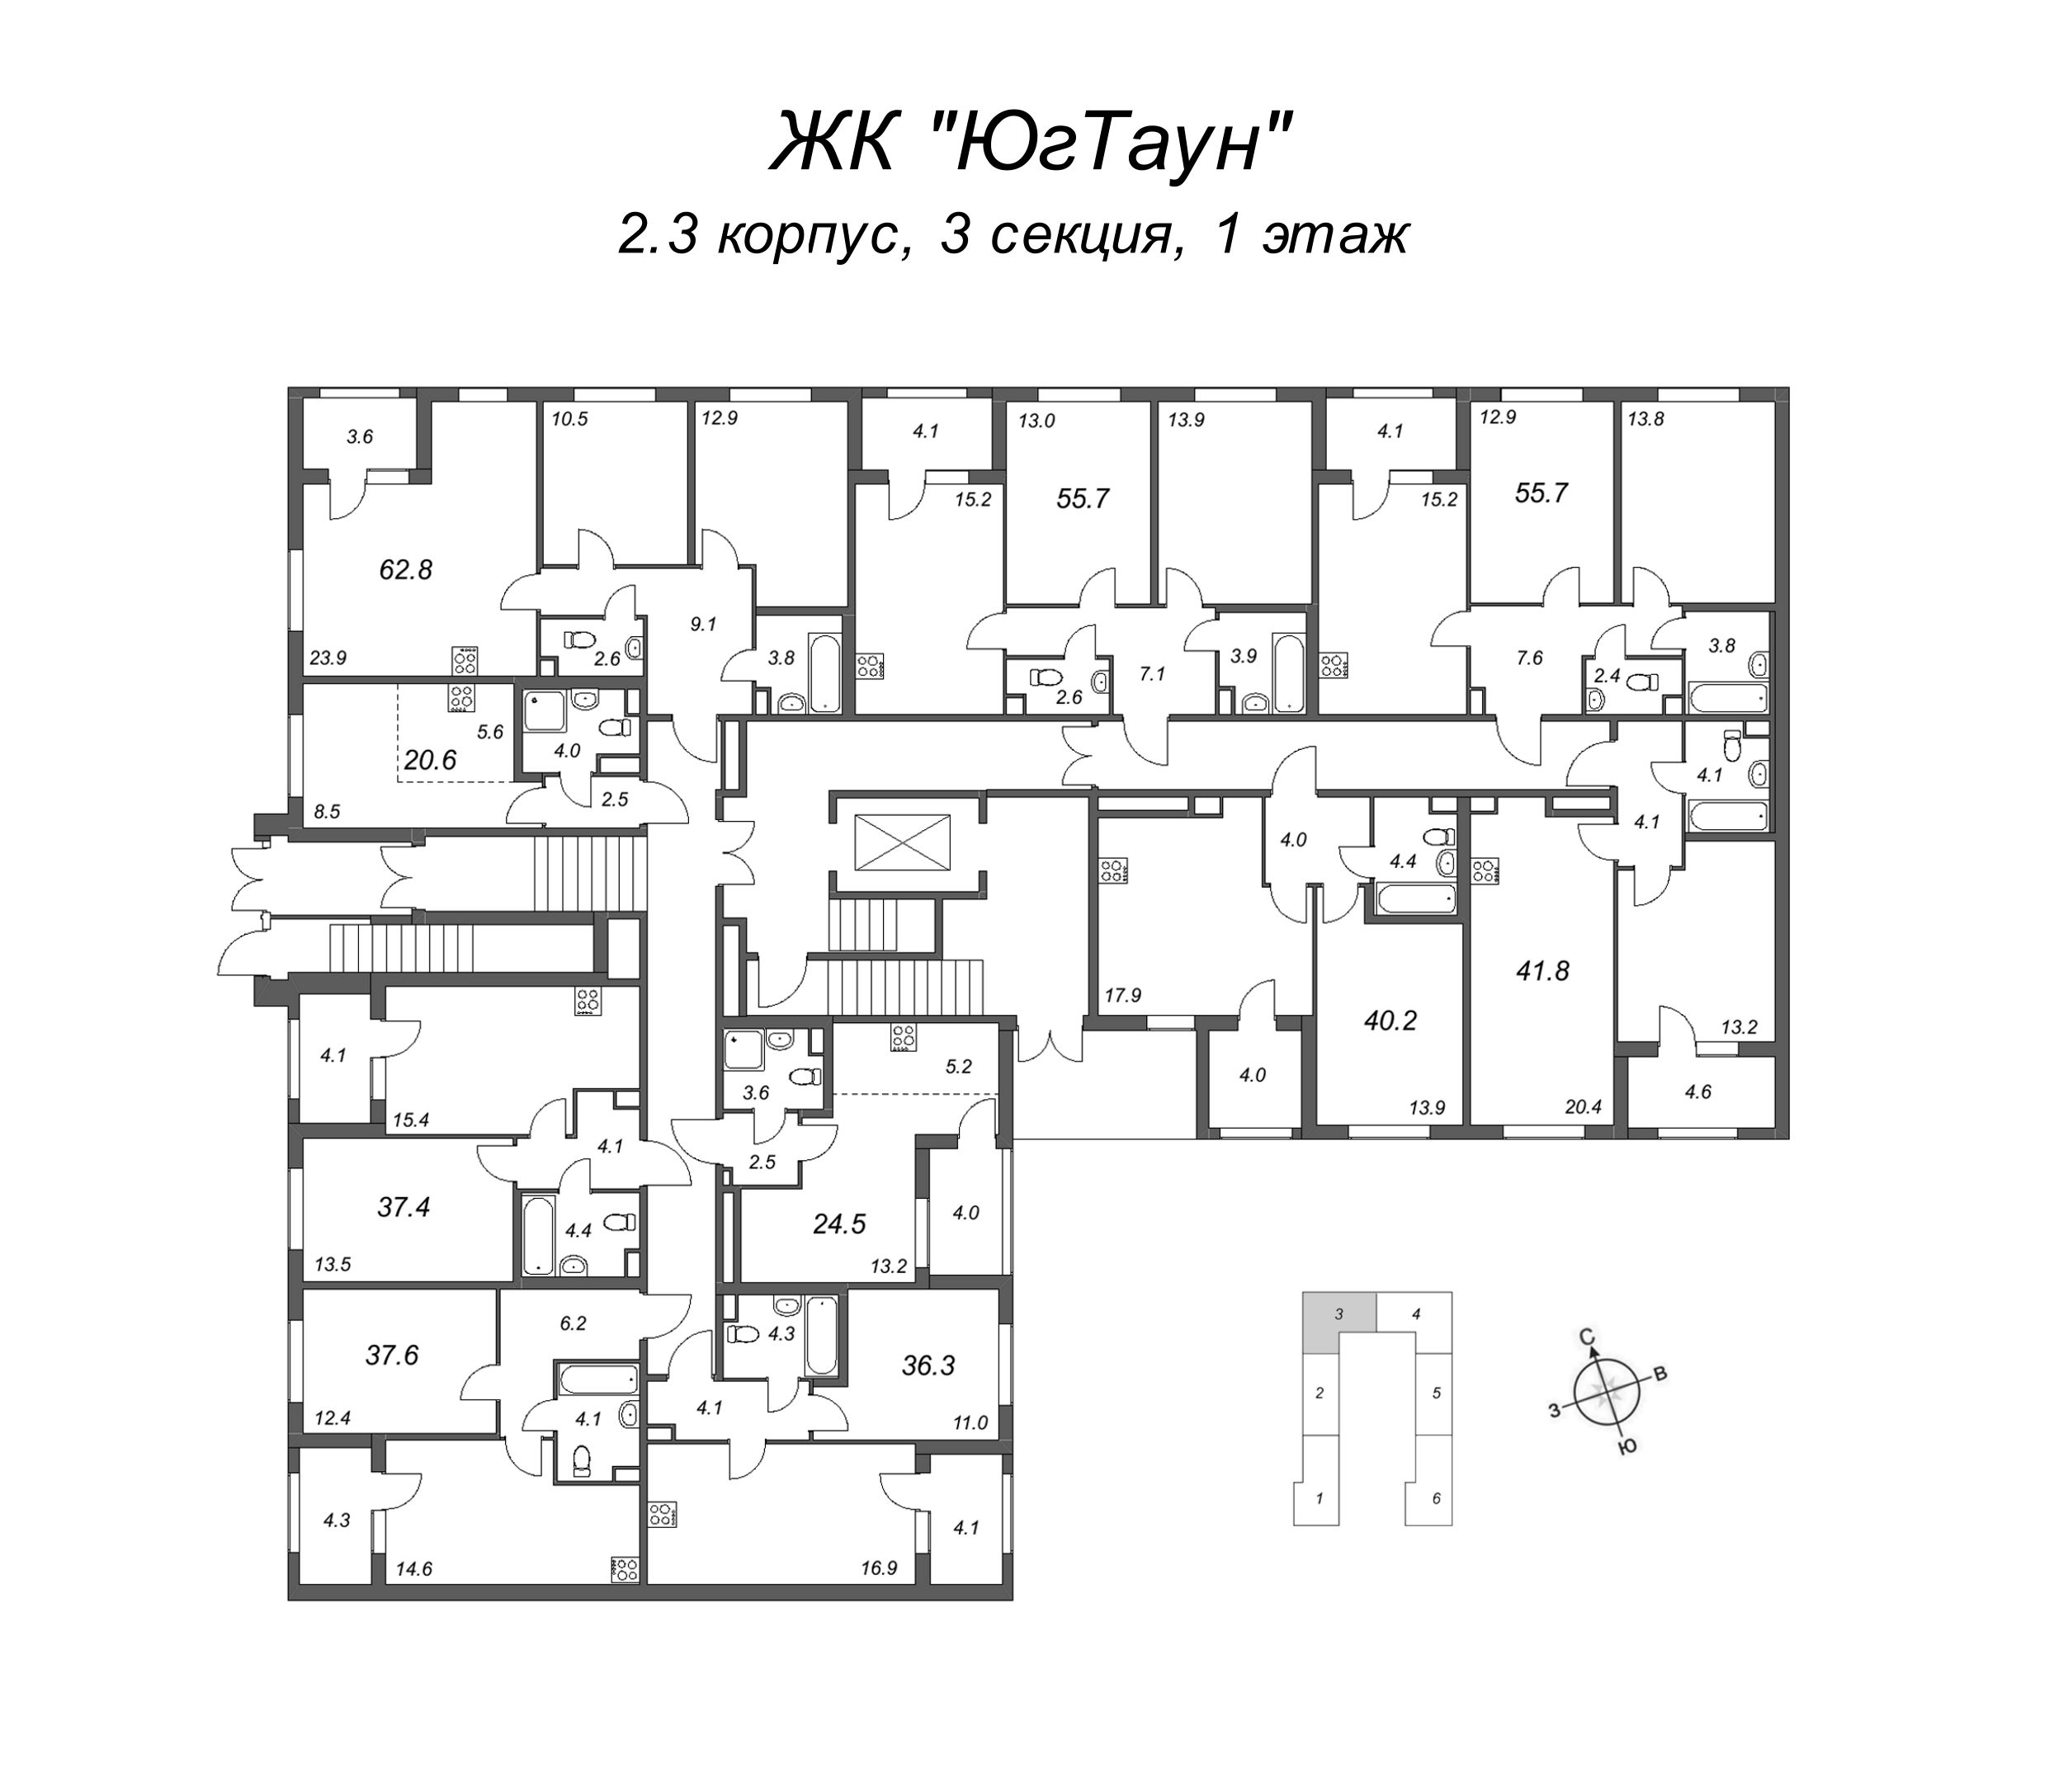 2-комнатная (Евро) квартира, 36.3 м² в ЖК "ЮгТаун" - планировка этажа